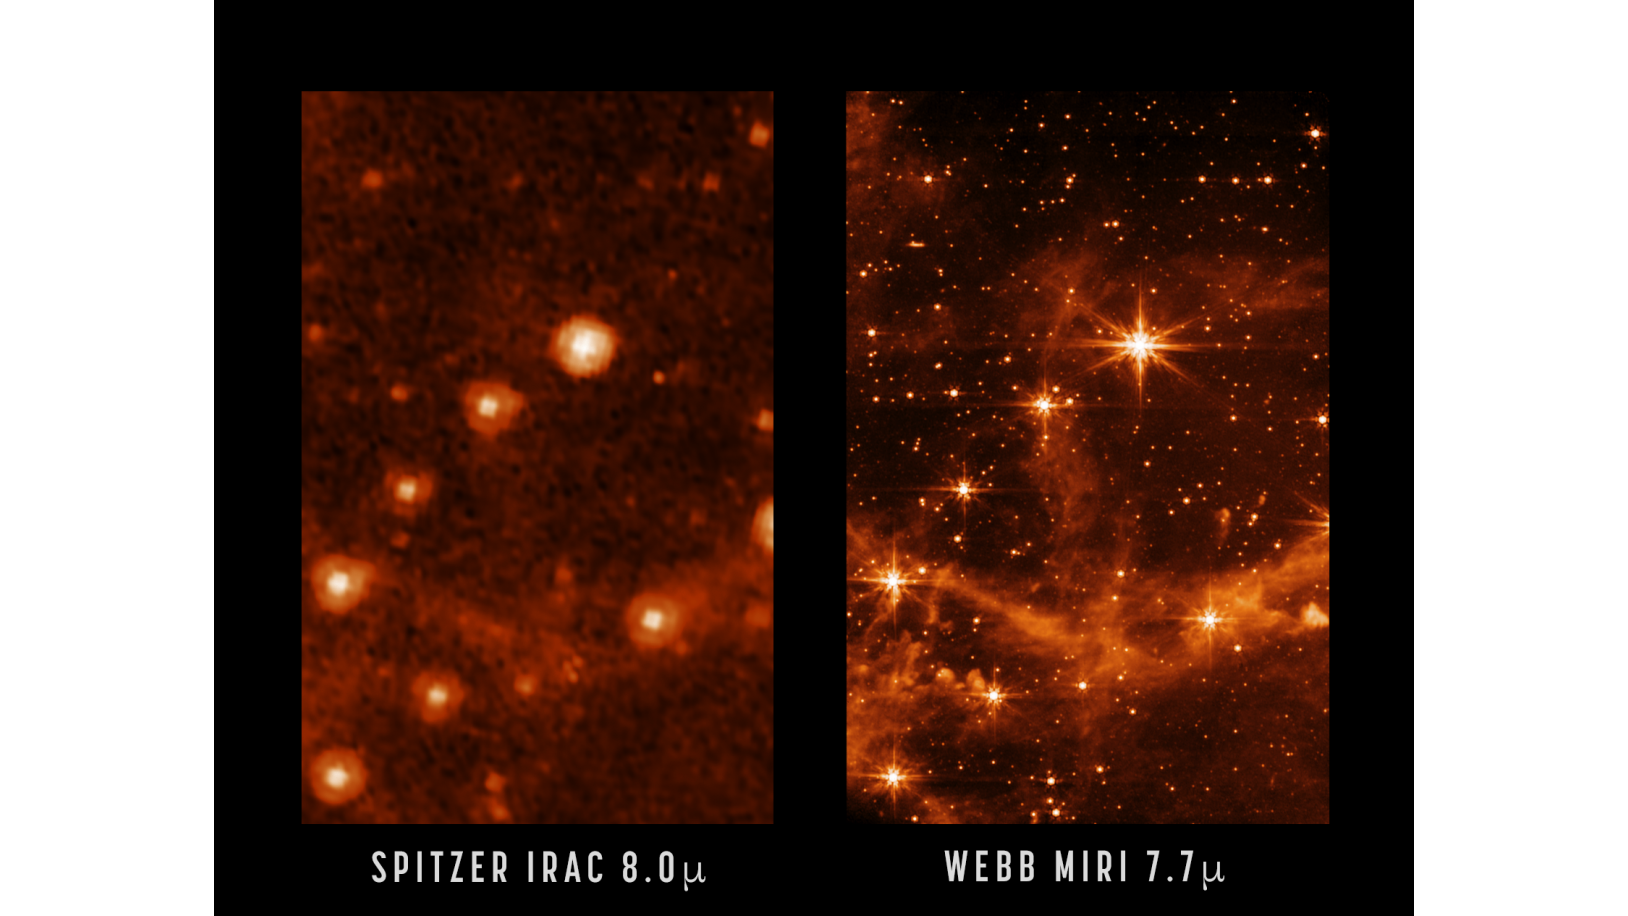 Un confronto tra le viste della stessa parte del cielo vista dal telescopio spaziale Spitzer in pensione della NASA e dal telescopio spaziale James Webb appena lanciato.